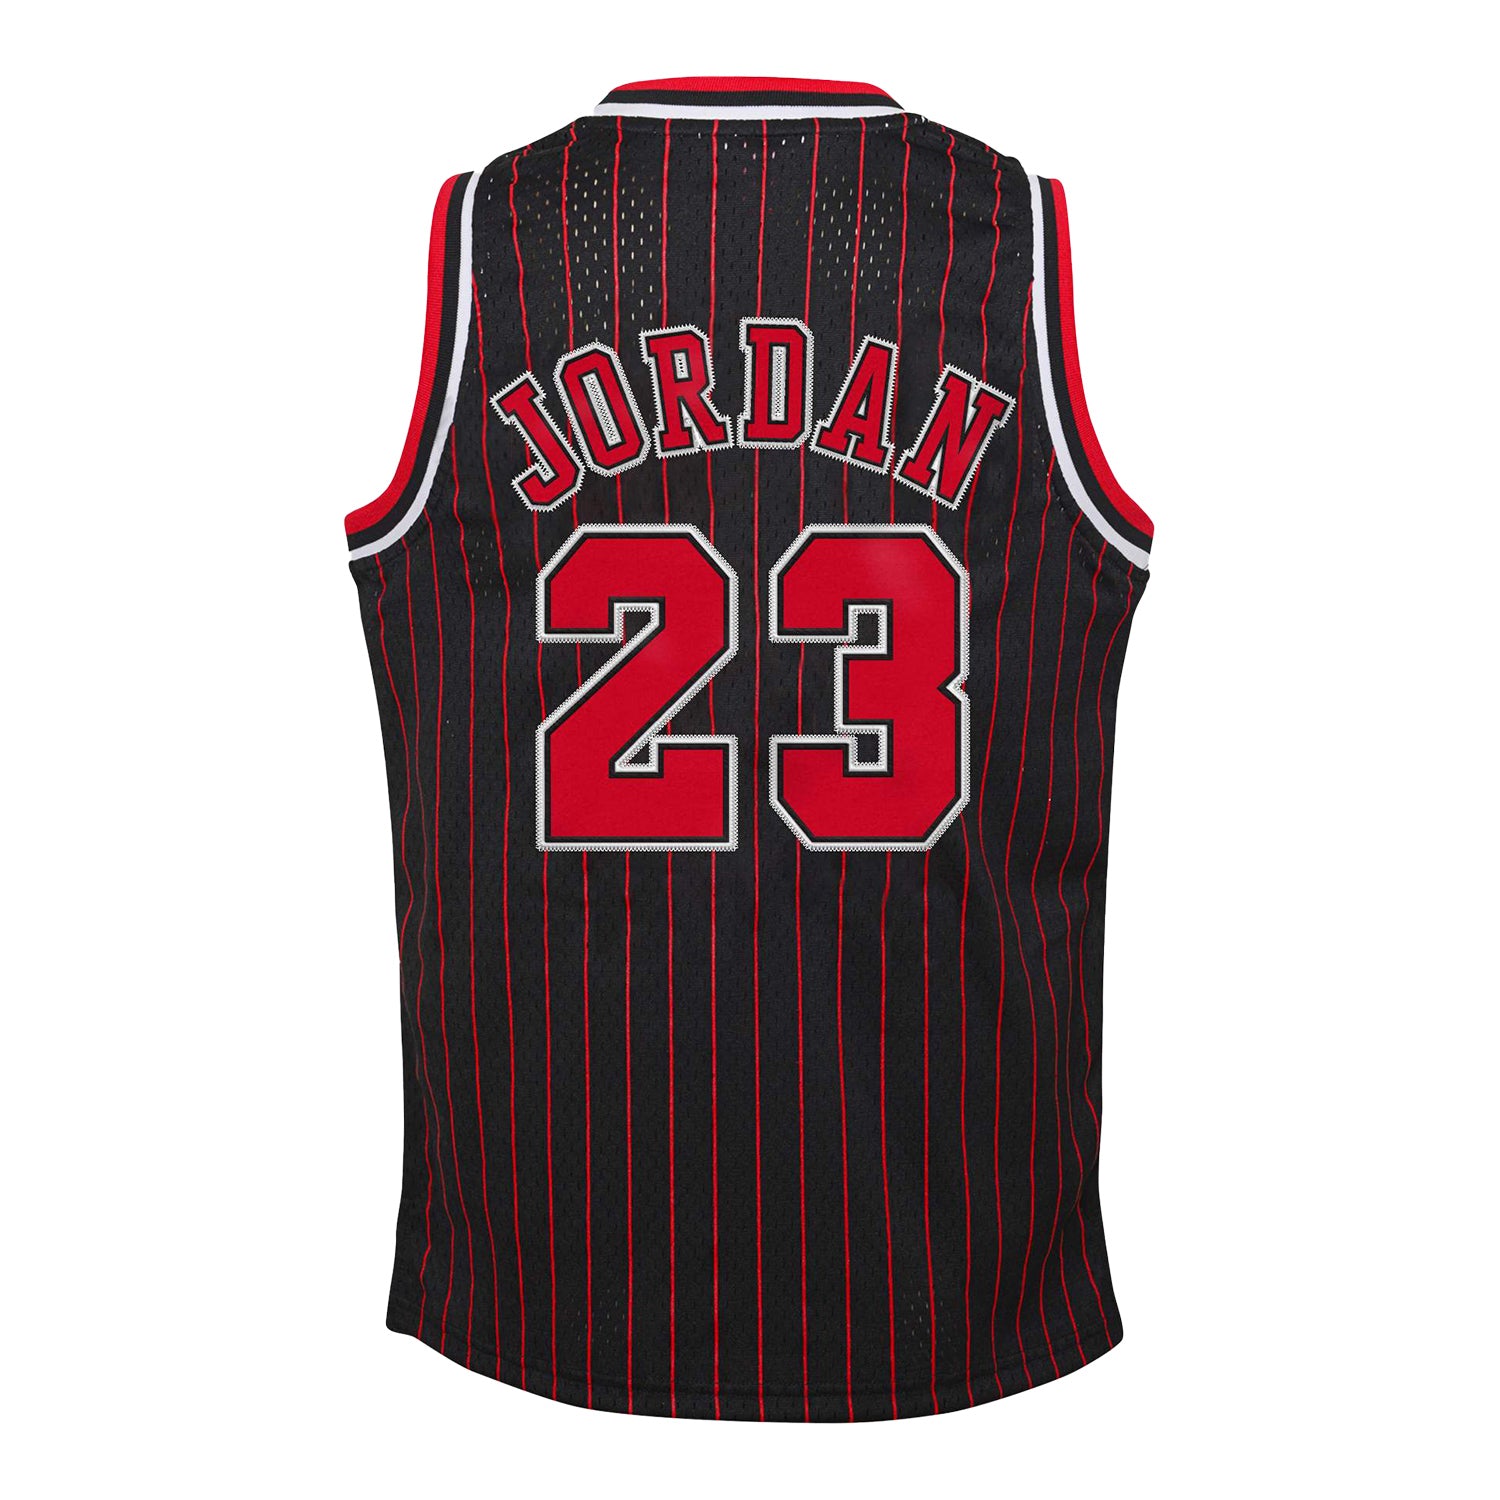 White Michael Jordan NBA Jerseys for sale